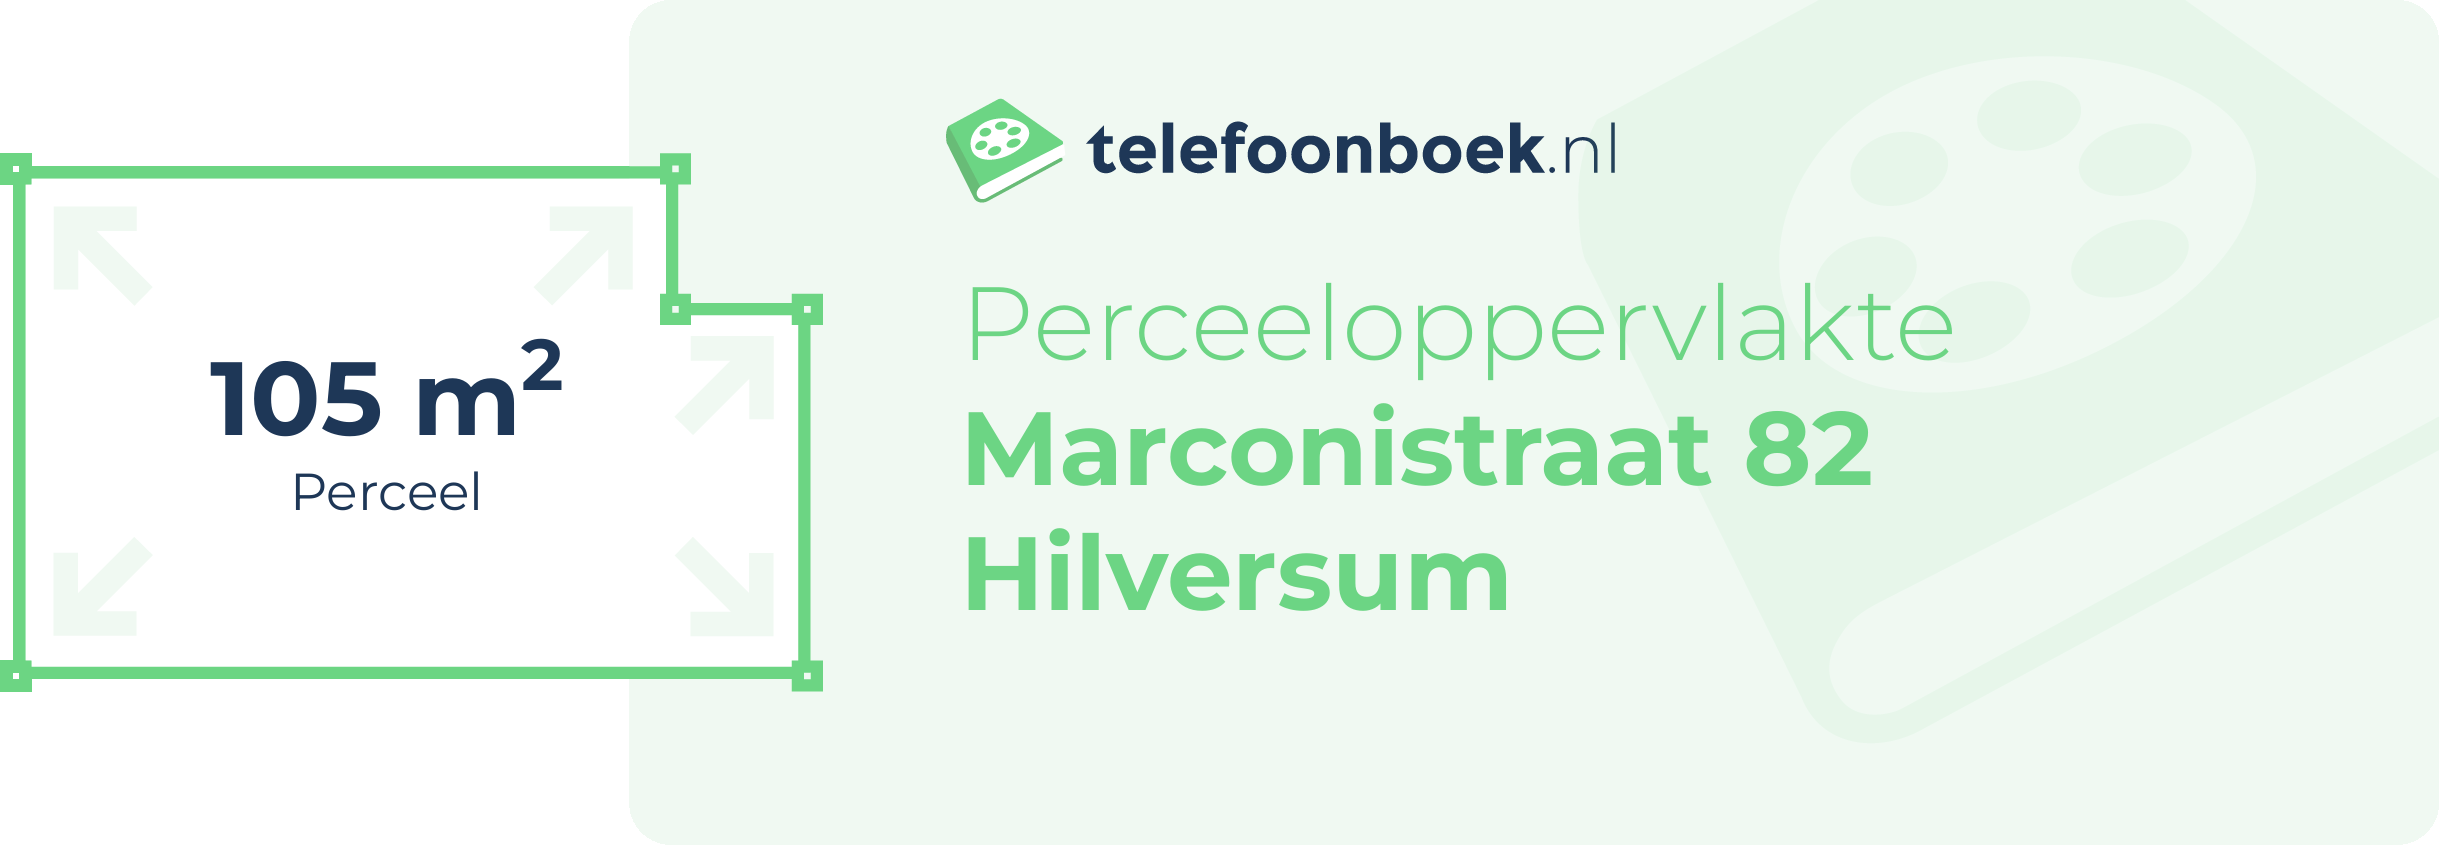 Perceeloppervlakte Marconistraat 82 Hilversum